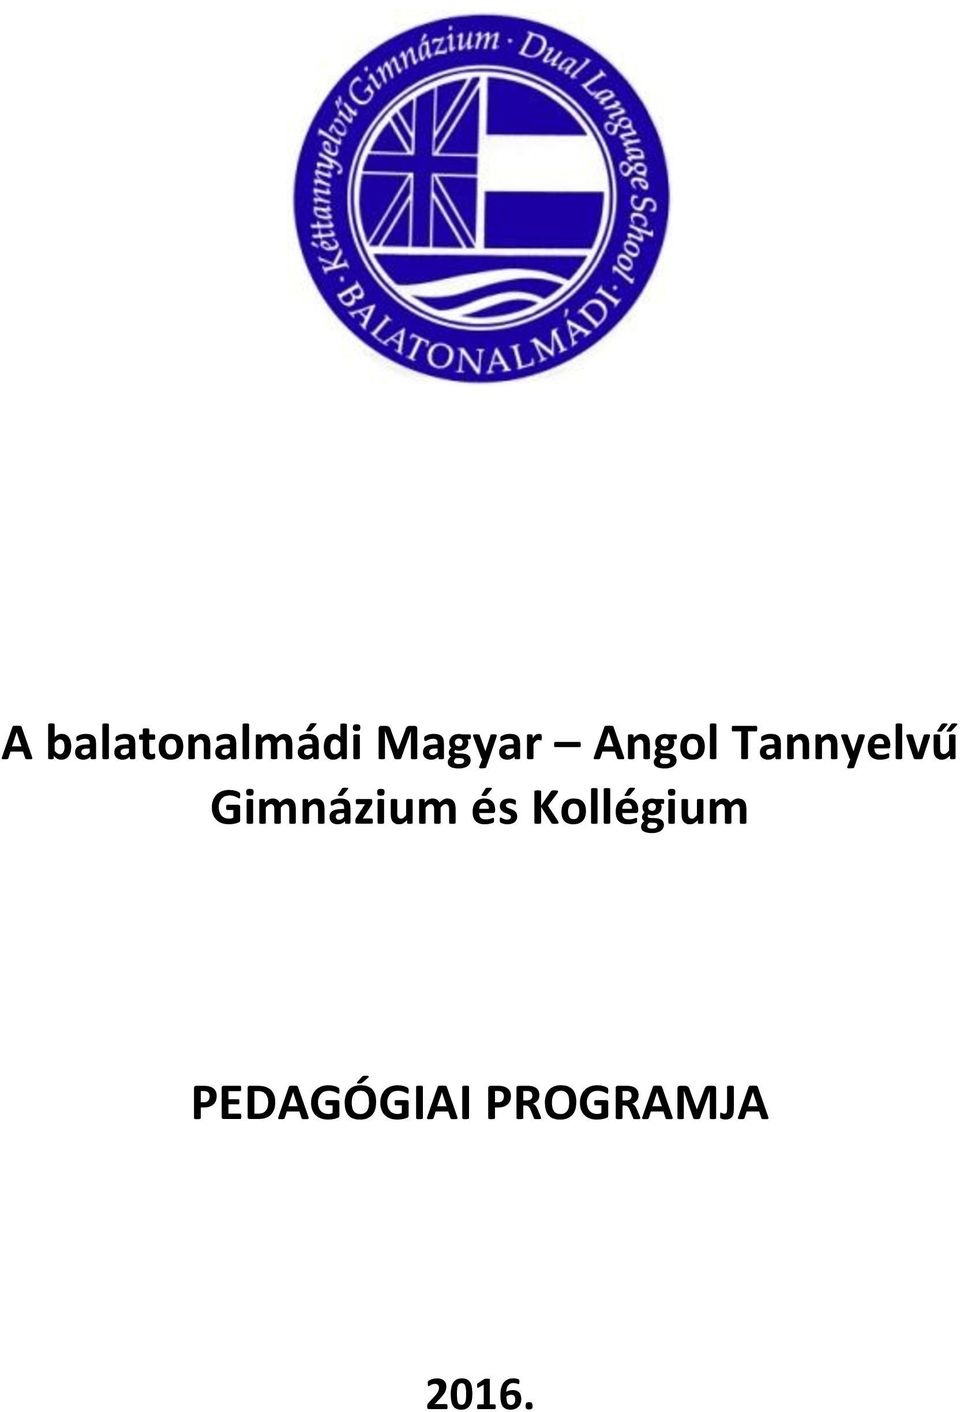 A balatonalmádi Magyar Angol Tannyelvű Gimnázium és Kollégium PEDAGÓGIAI  PROGRAMJA PDF Ingyenes letöltés